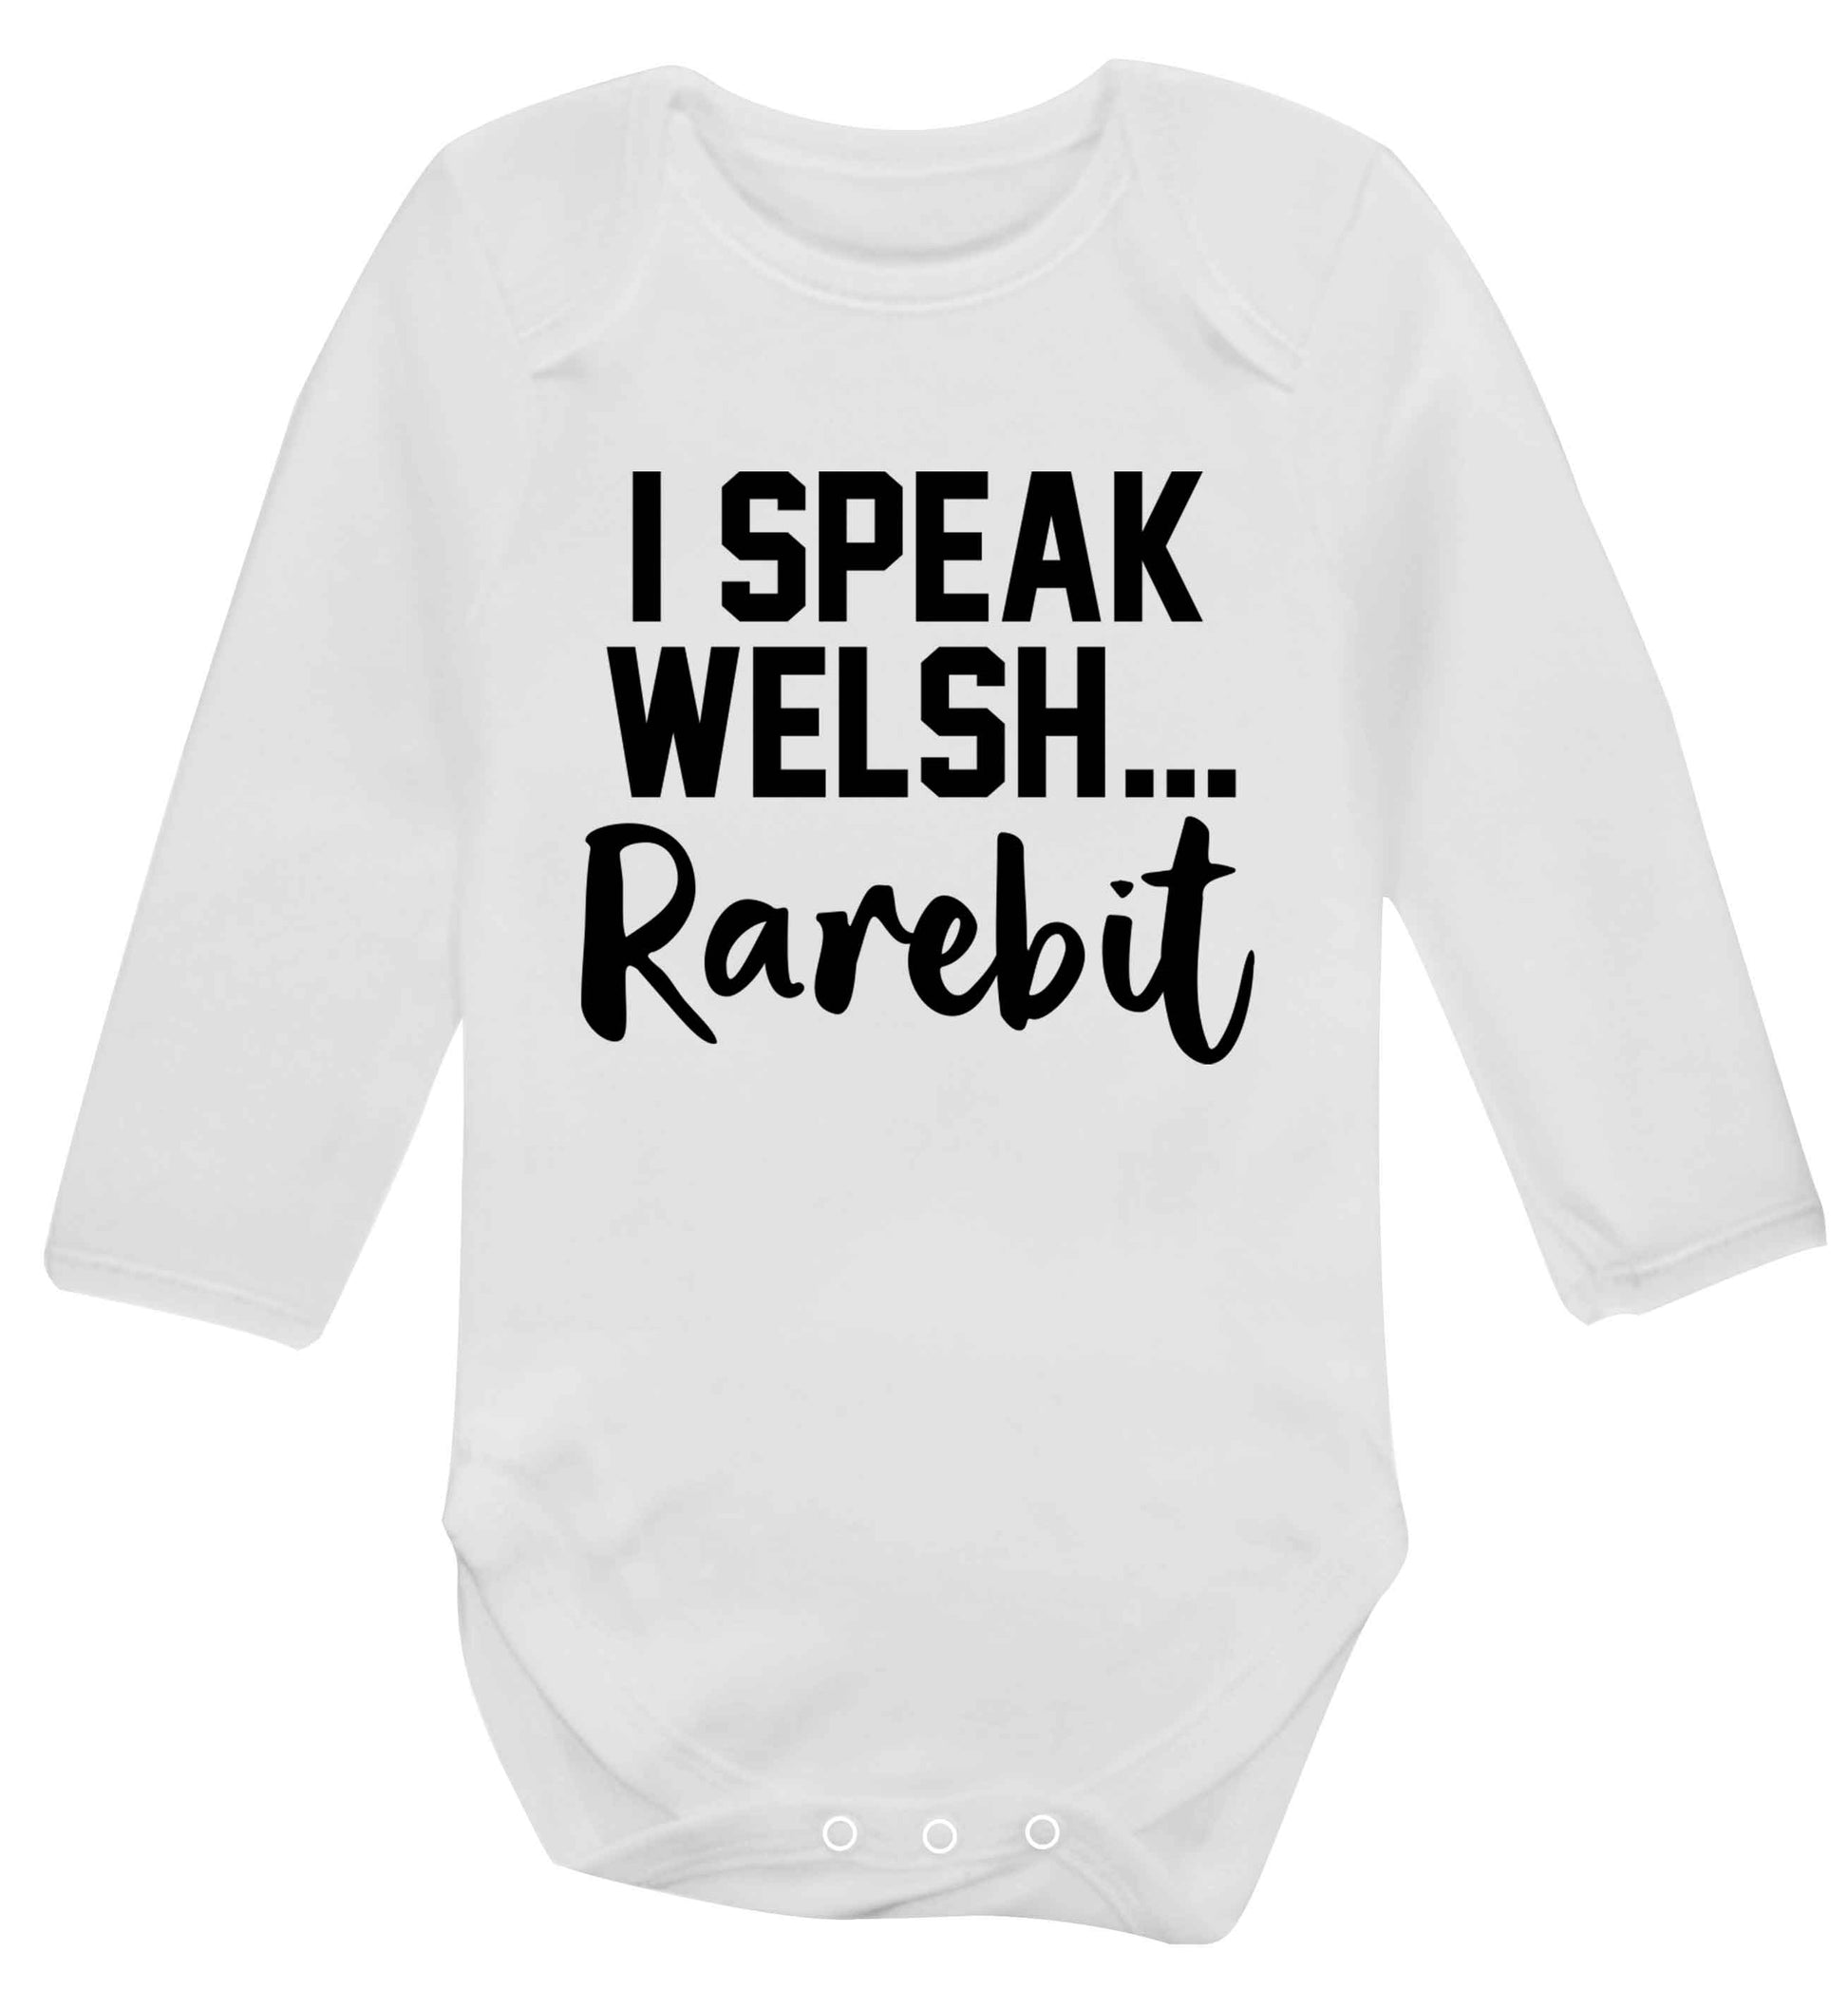 I speak Welsh...rarebit Baby Vest long sleeved white 6-12 months